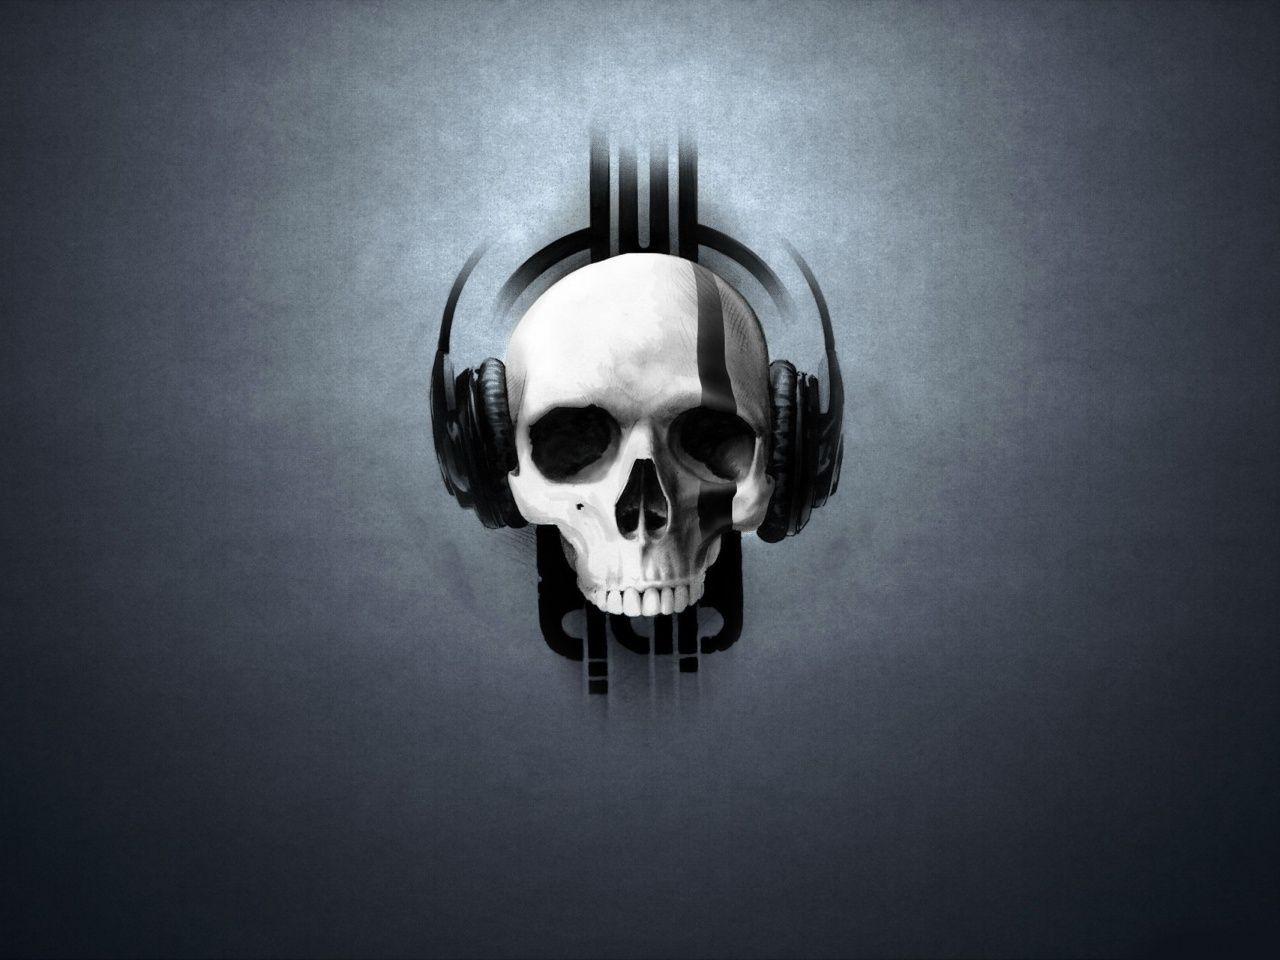 Skull With Headphones Wallpaper Top